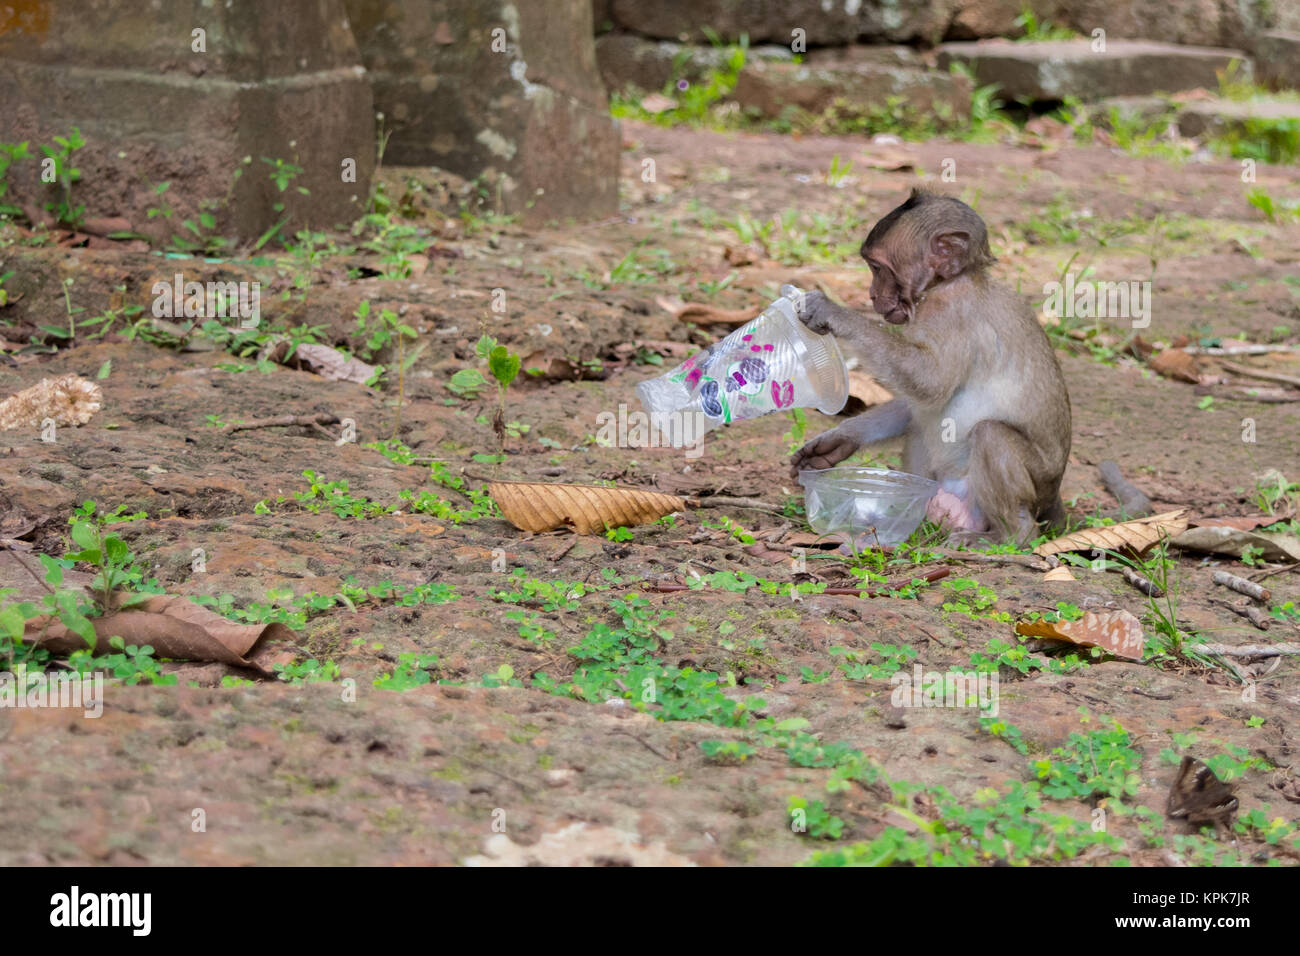 Un singe macaque curieux s'asseoir et à l'alimentation, l'étude d'une tasse en plastique vide, gauche trash par les touristes. Le Cambodge, l'Asie du Sud Est. Banque D'Images